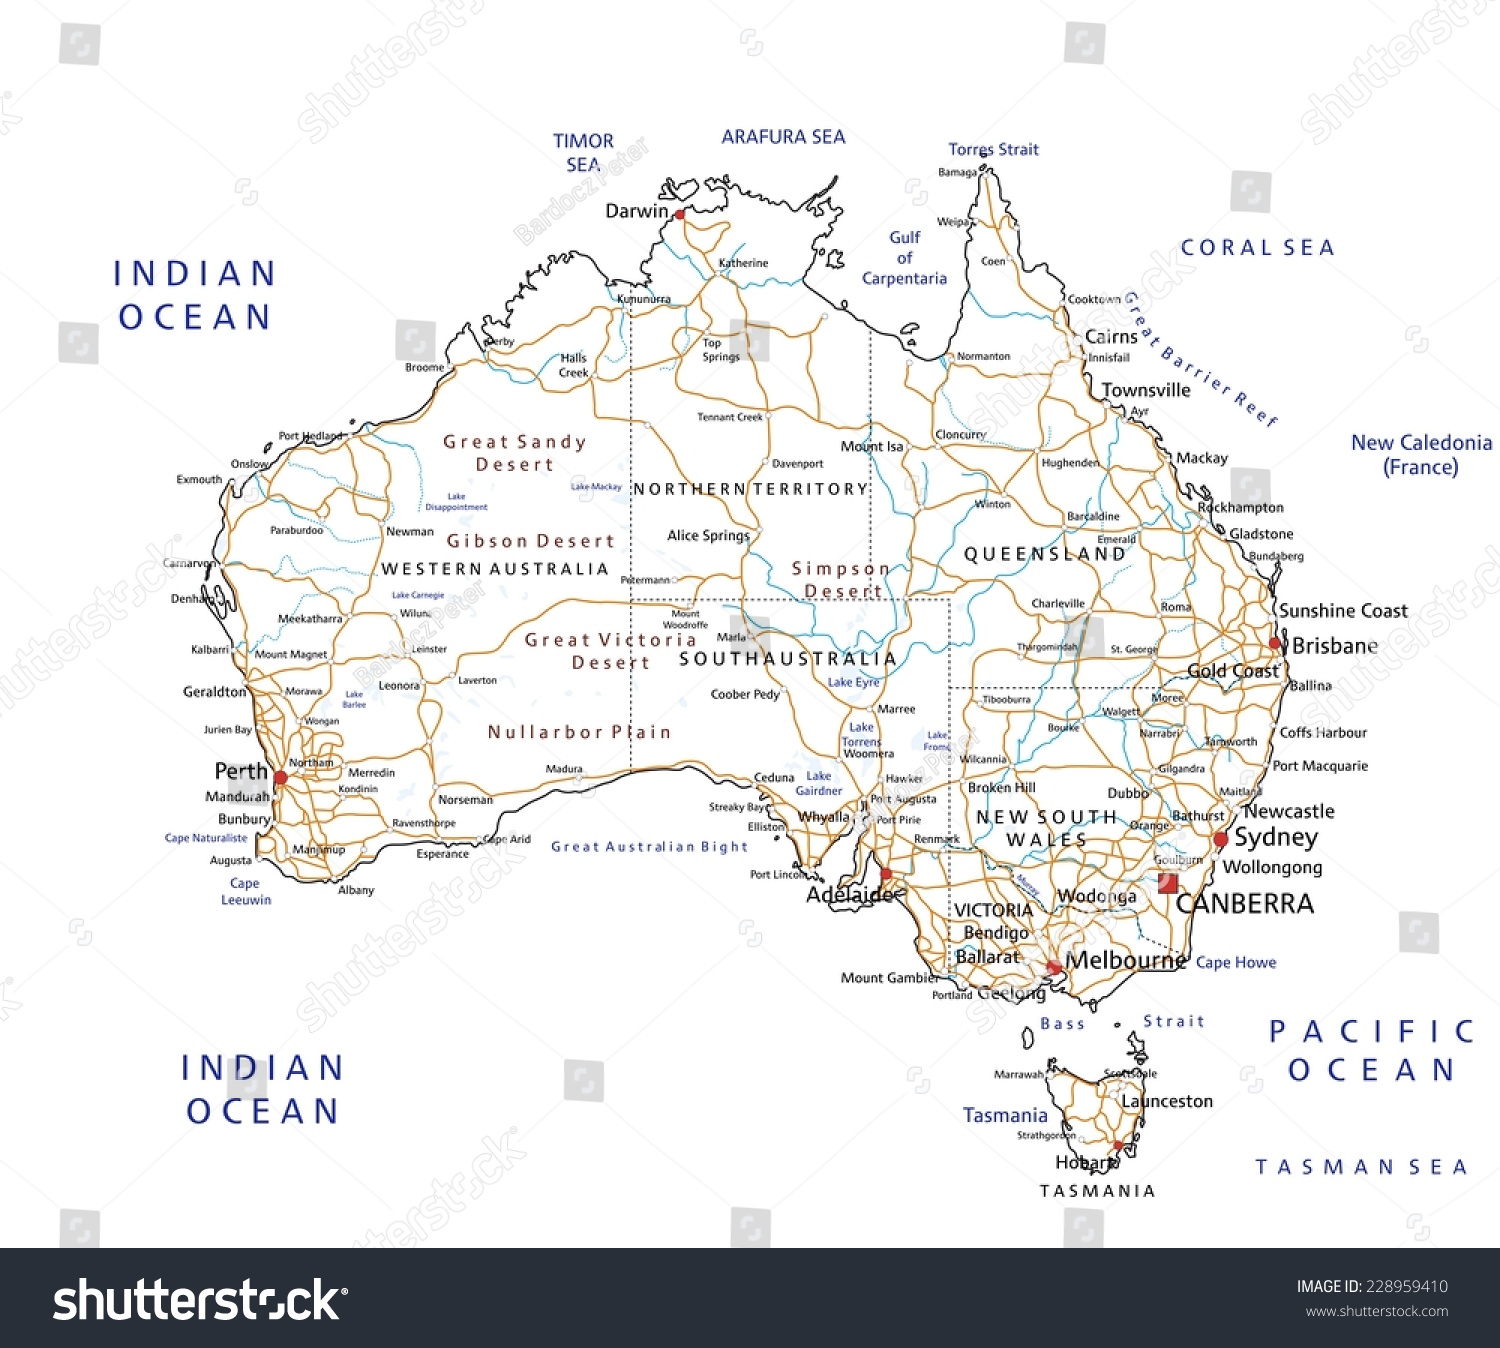 Im Genes De Detailed Australian Map Im Genes Fotos Y Vectores